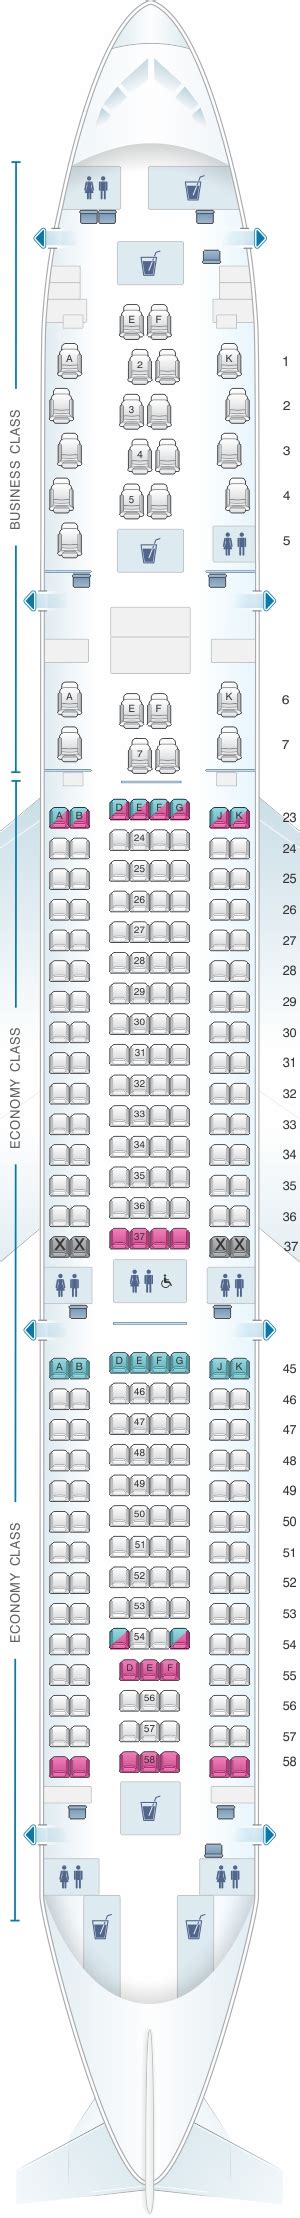 Seat Map Qantas Airways Airbus A330 200 Domestic 251pax Seatmaestro